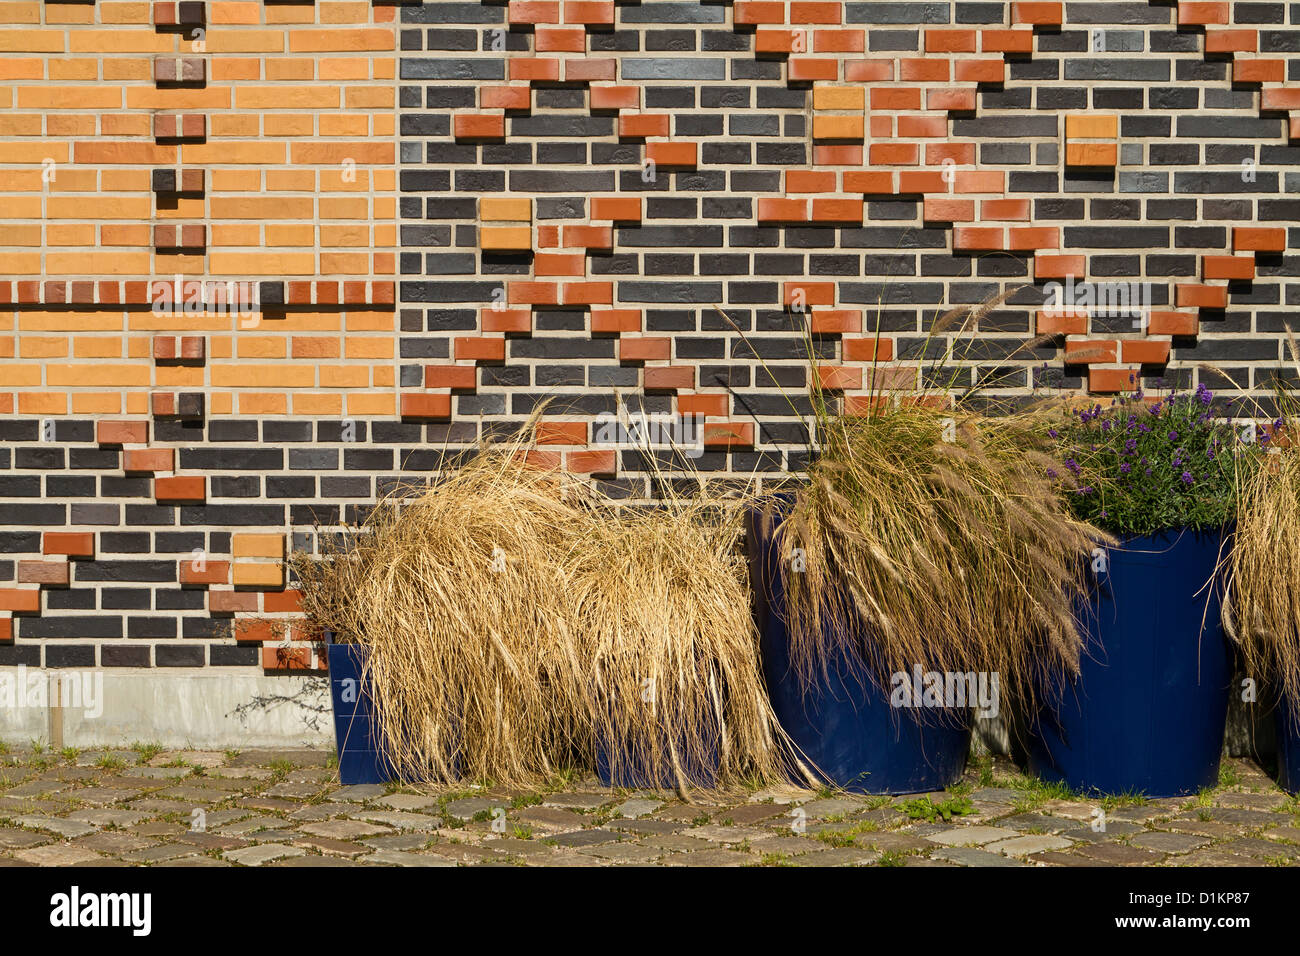 Typische Klinker Ziegel Fassade in Hamburg, Deutschland Stockfotografie -  Alamy